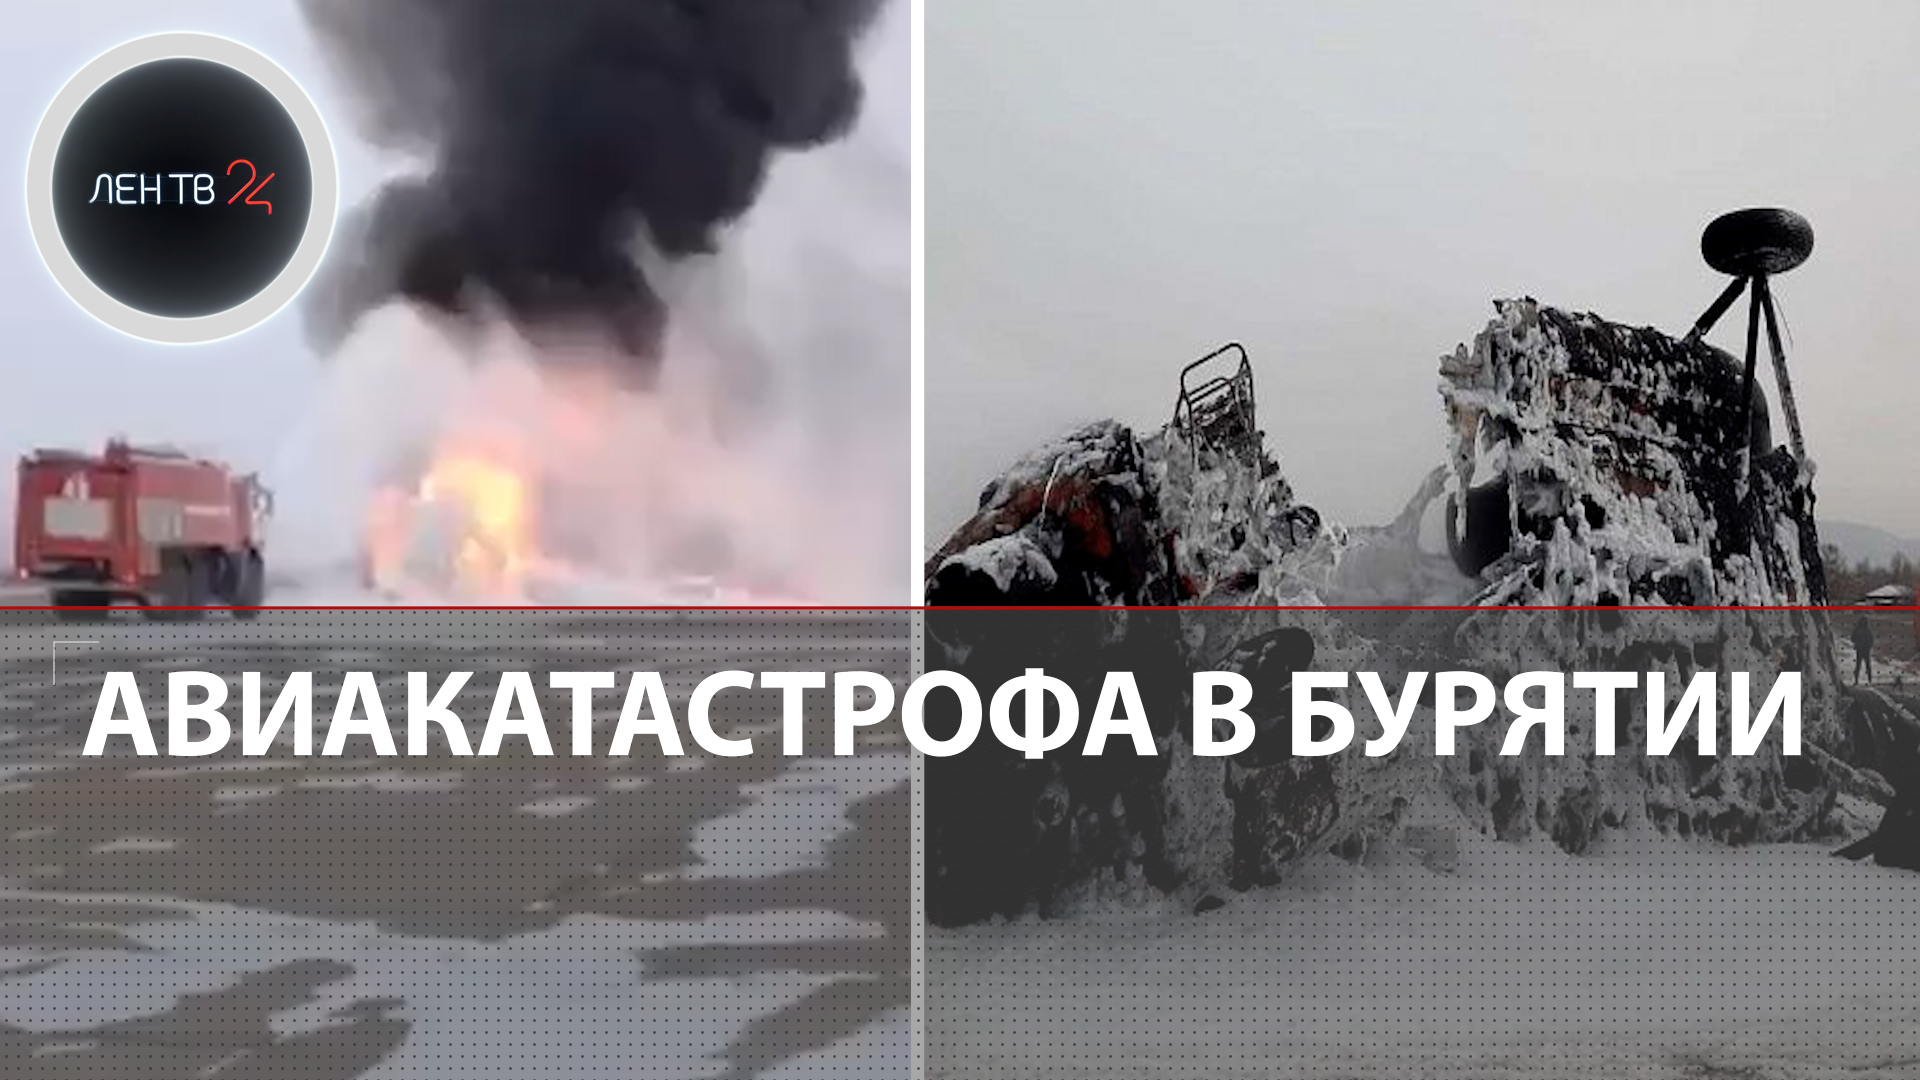 Новенький вертолет разбился в Бурятии | Весь экипаж М-171-Е погиб | Улан-Удэ